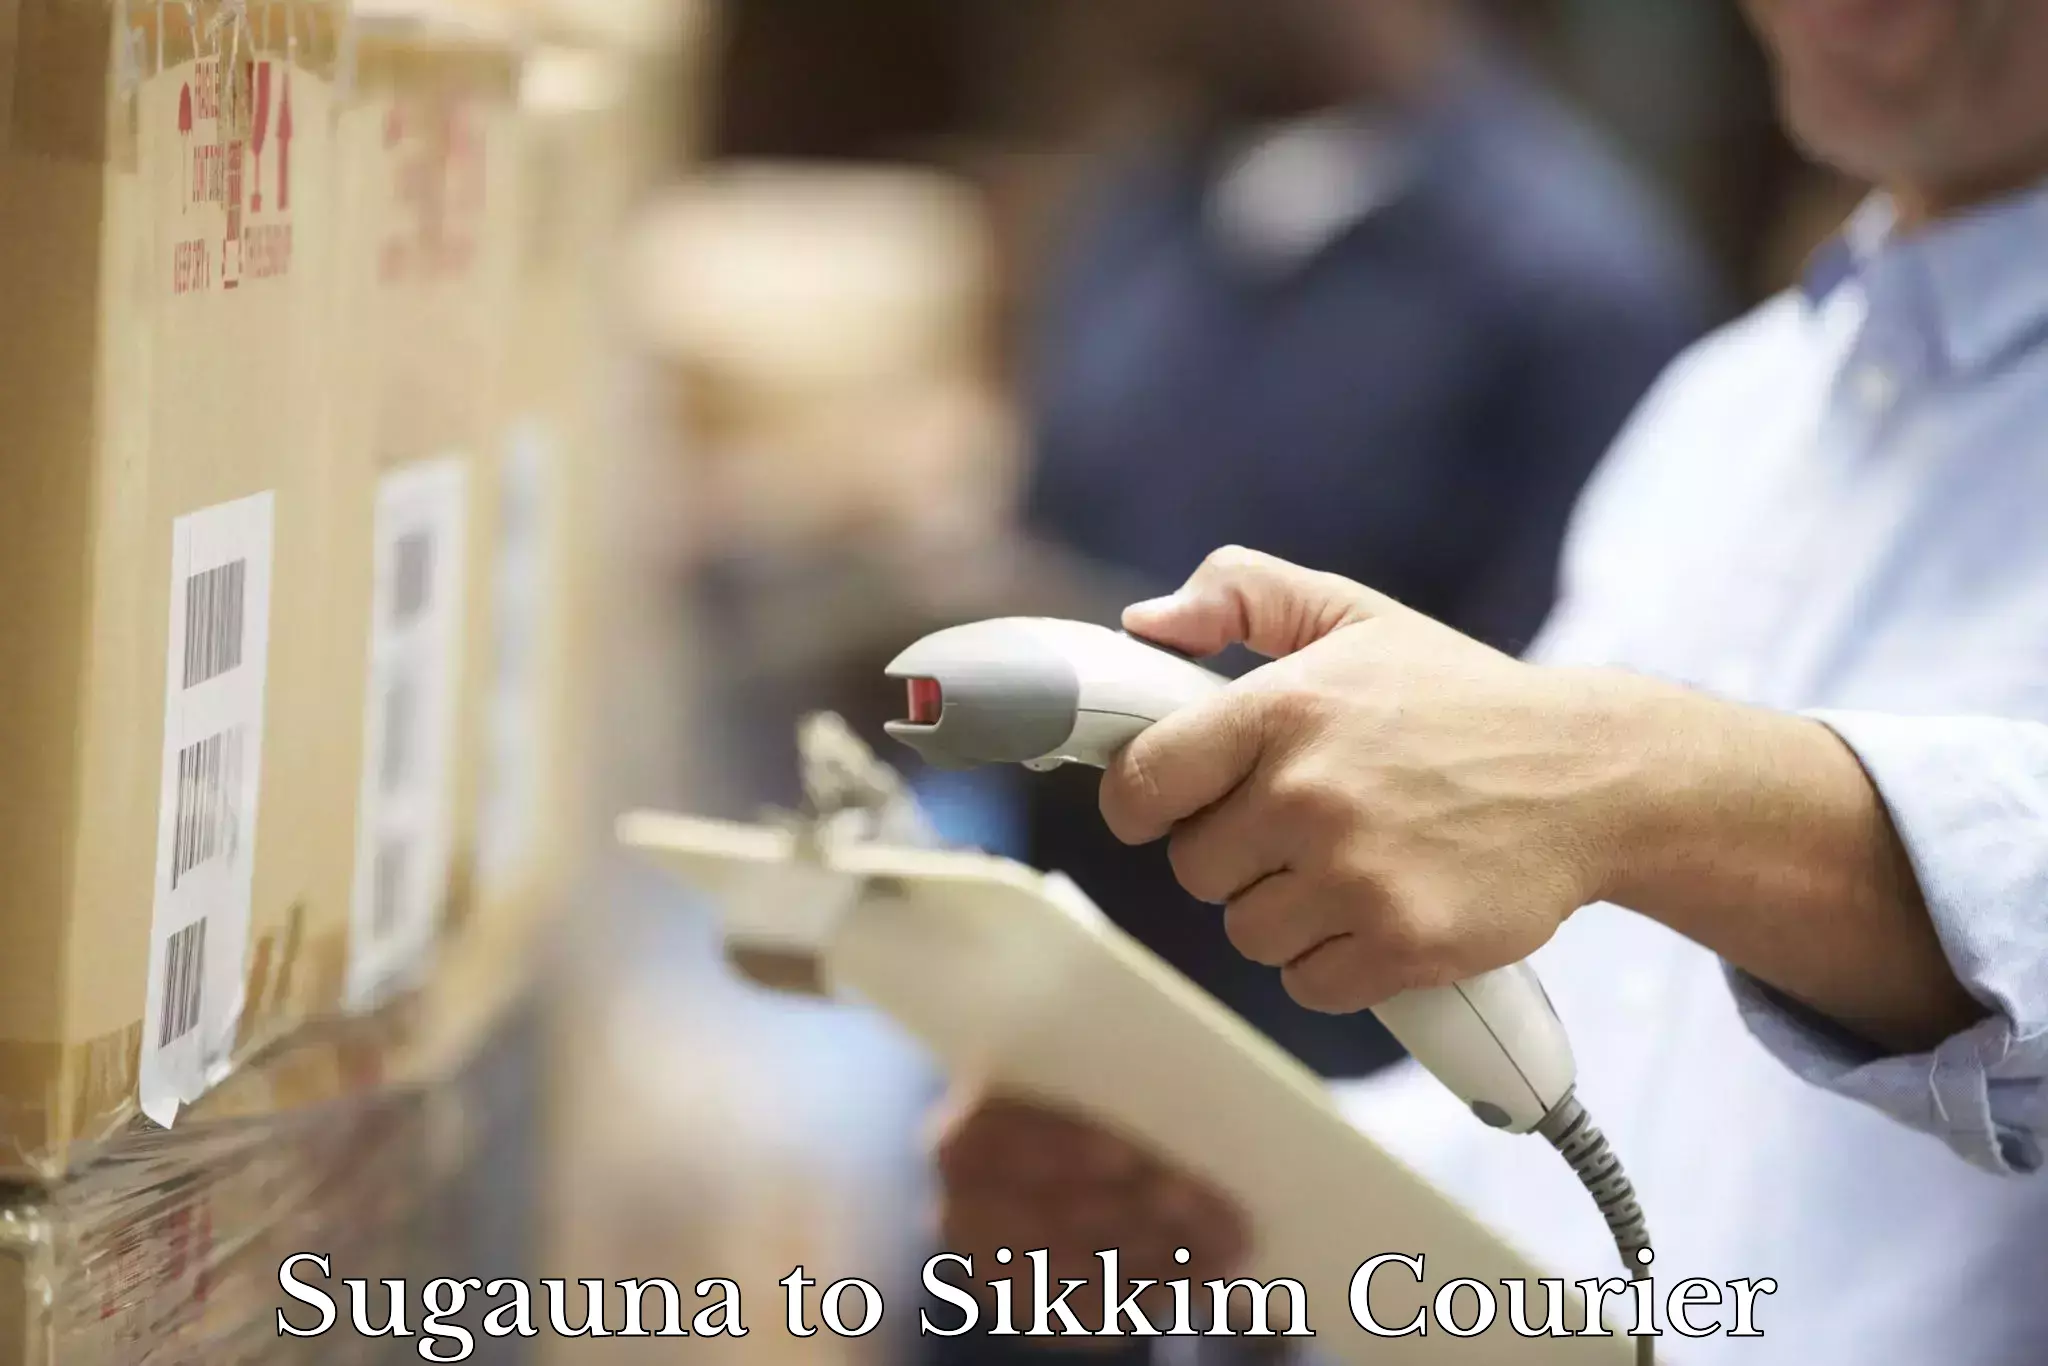 Efficient order fulfillment in Sugauna to West Sikkim